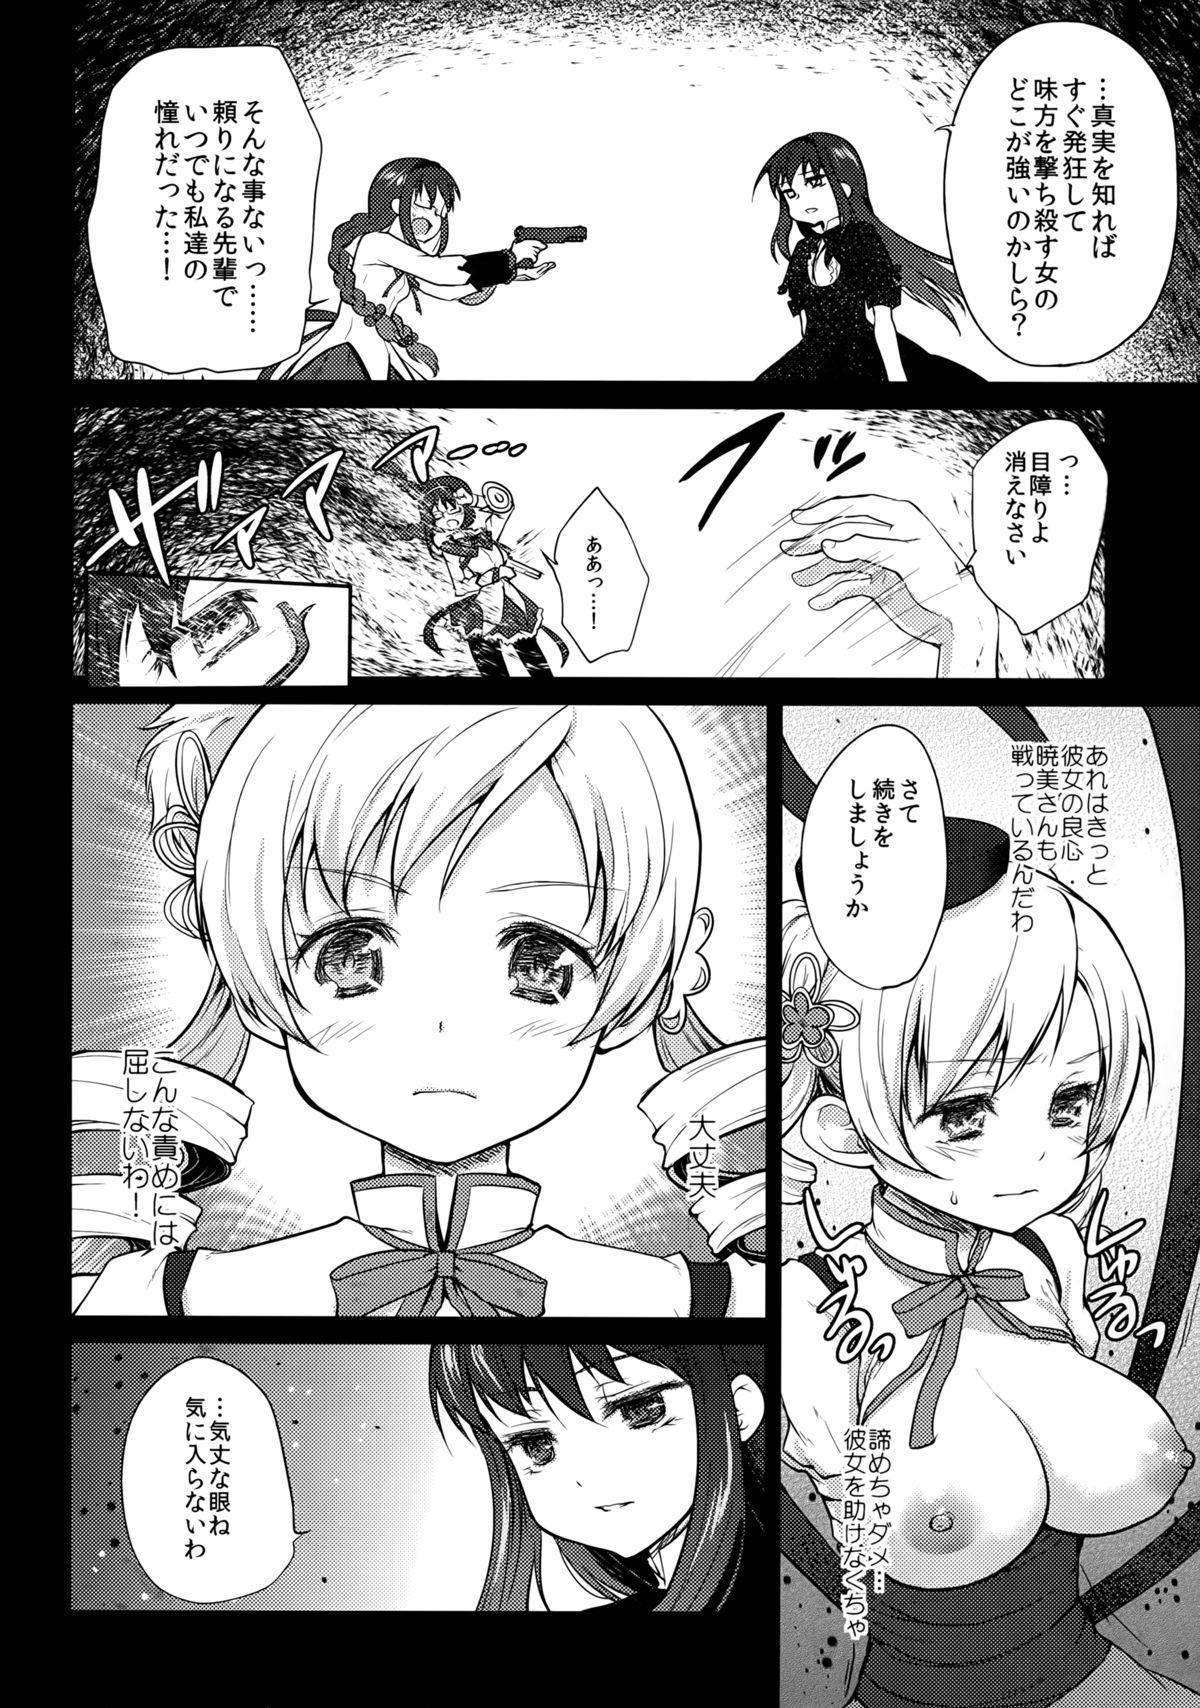 Doublepenetration Hitoribocchi wa Sabishii Mono ne - Puella magi madoka magica Latex - Page 8